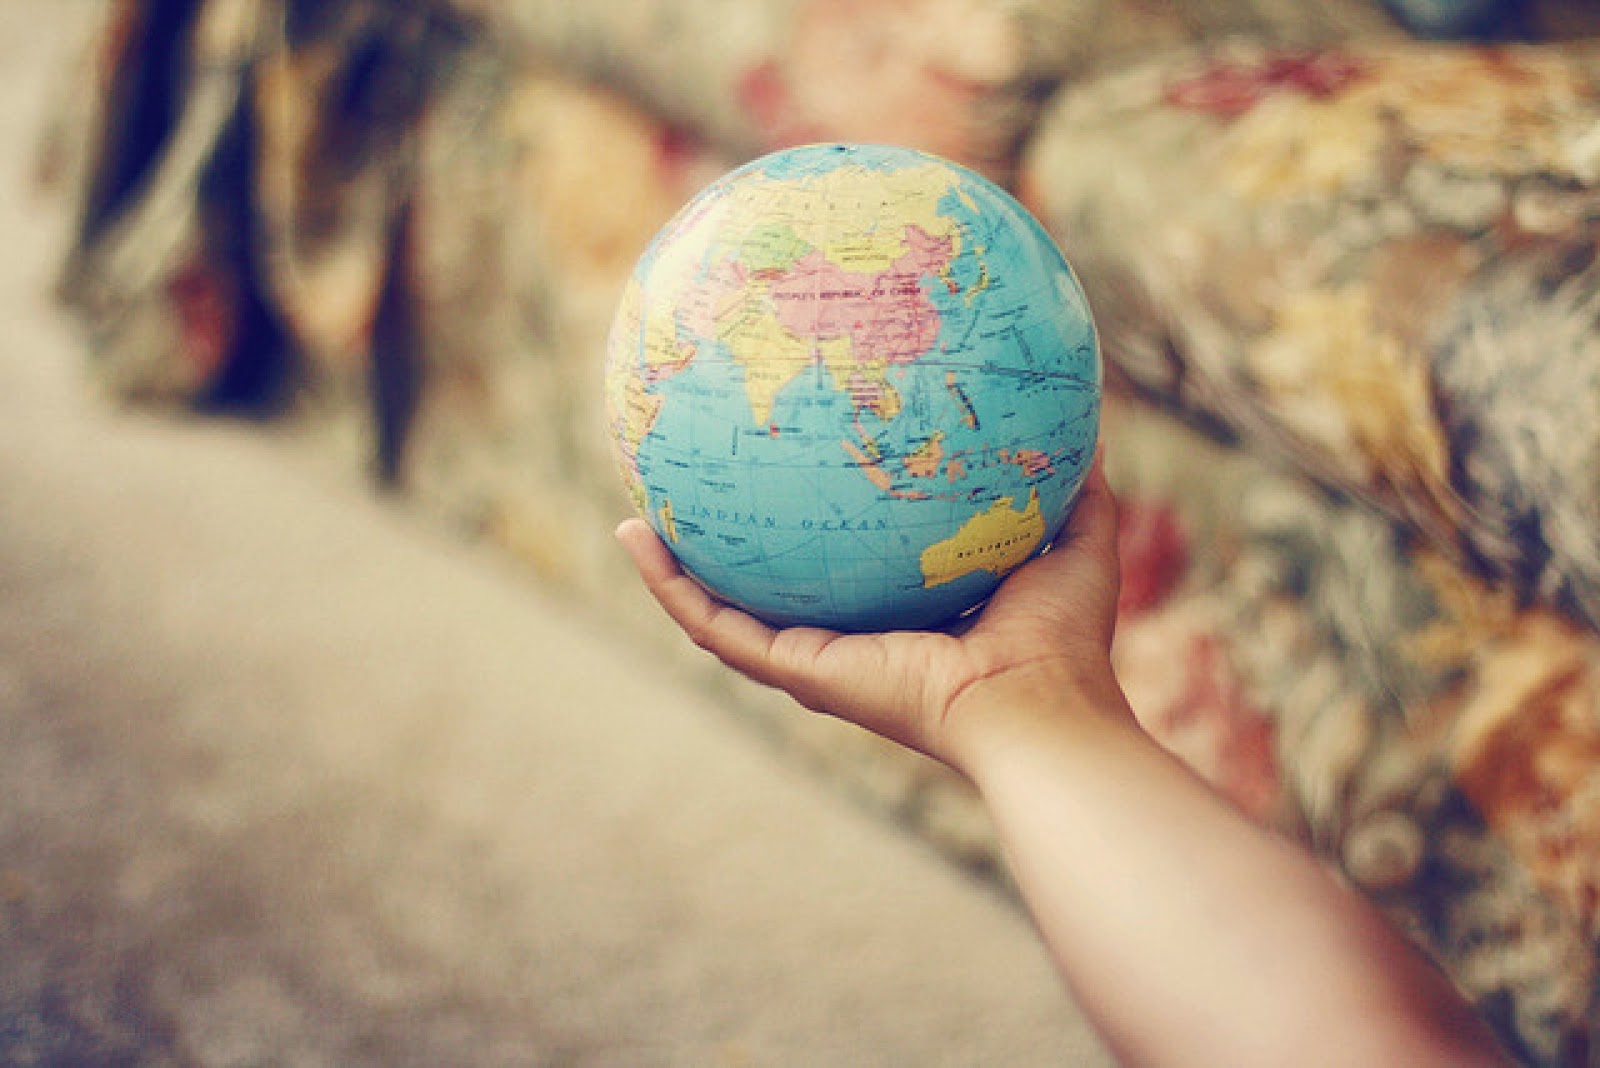 She traveled the world. Путешествие по всему миру. Планета путешествий. Объехать весь мир. Весь мир в ваших руках.